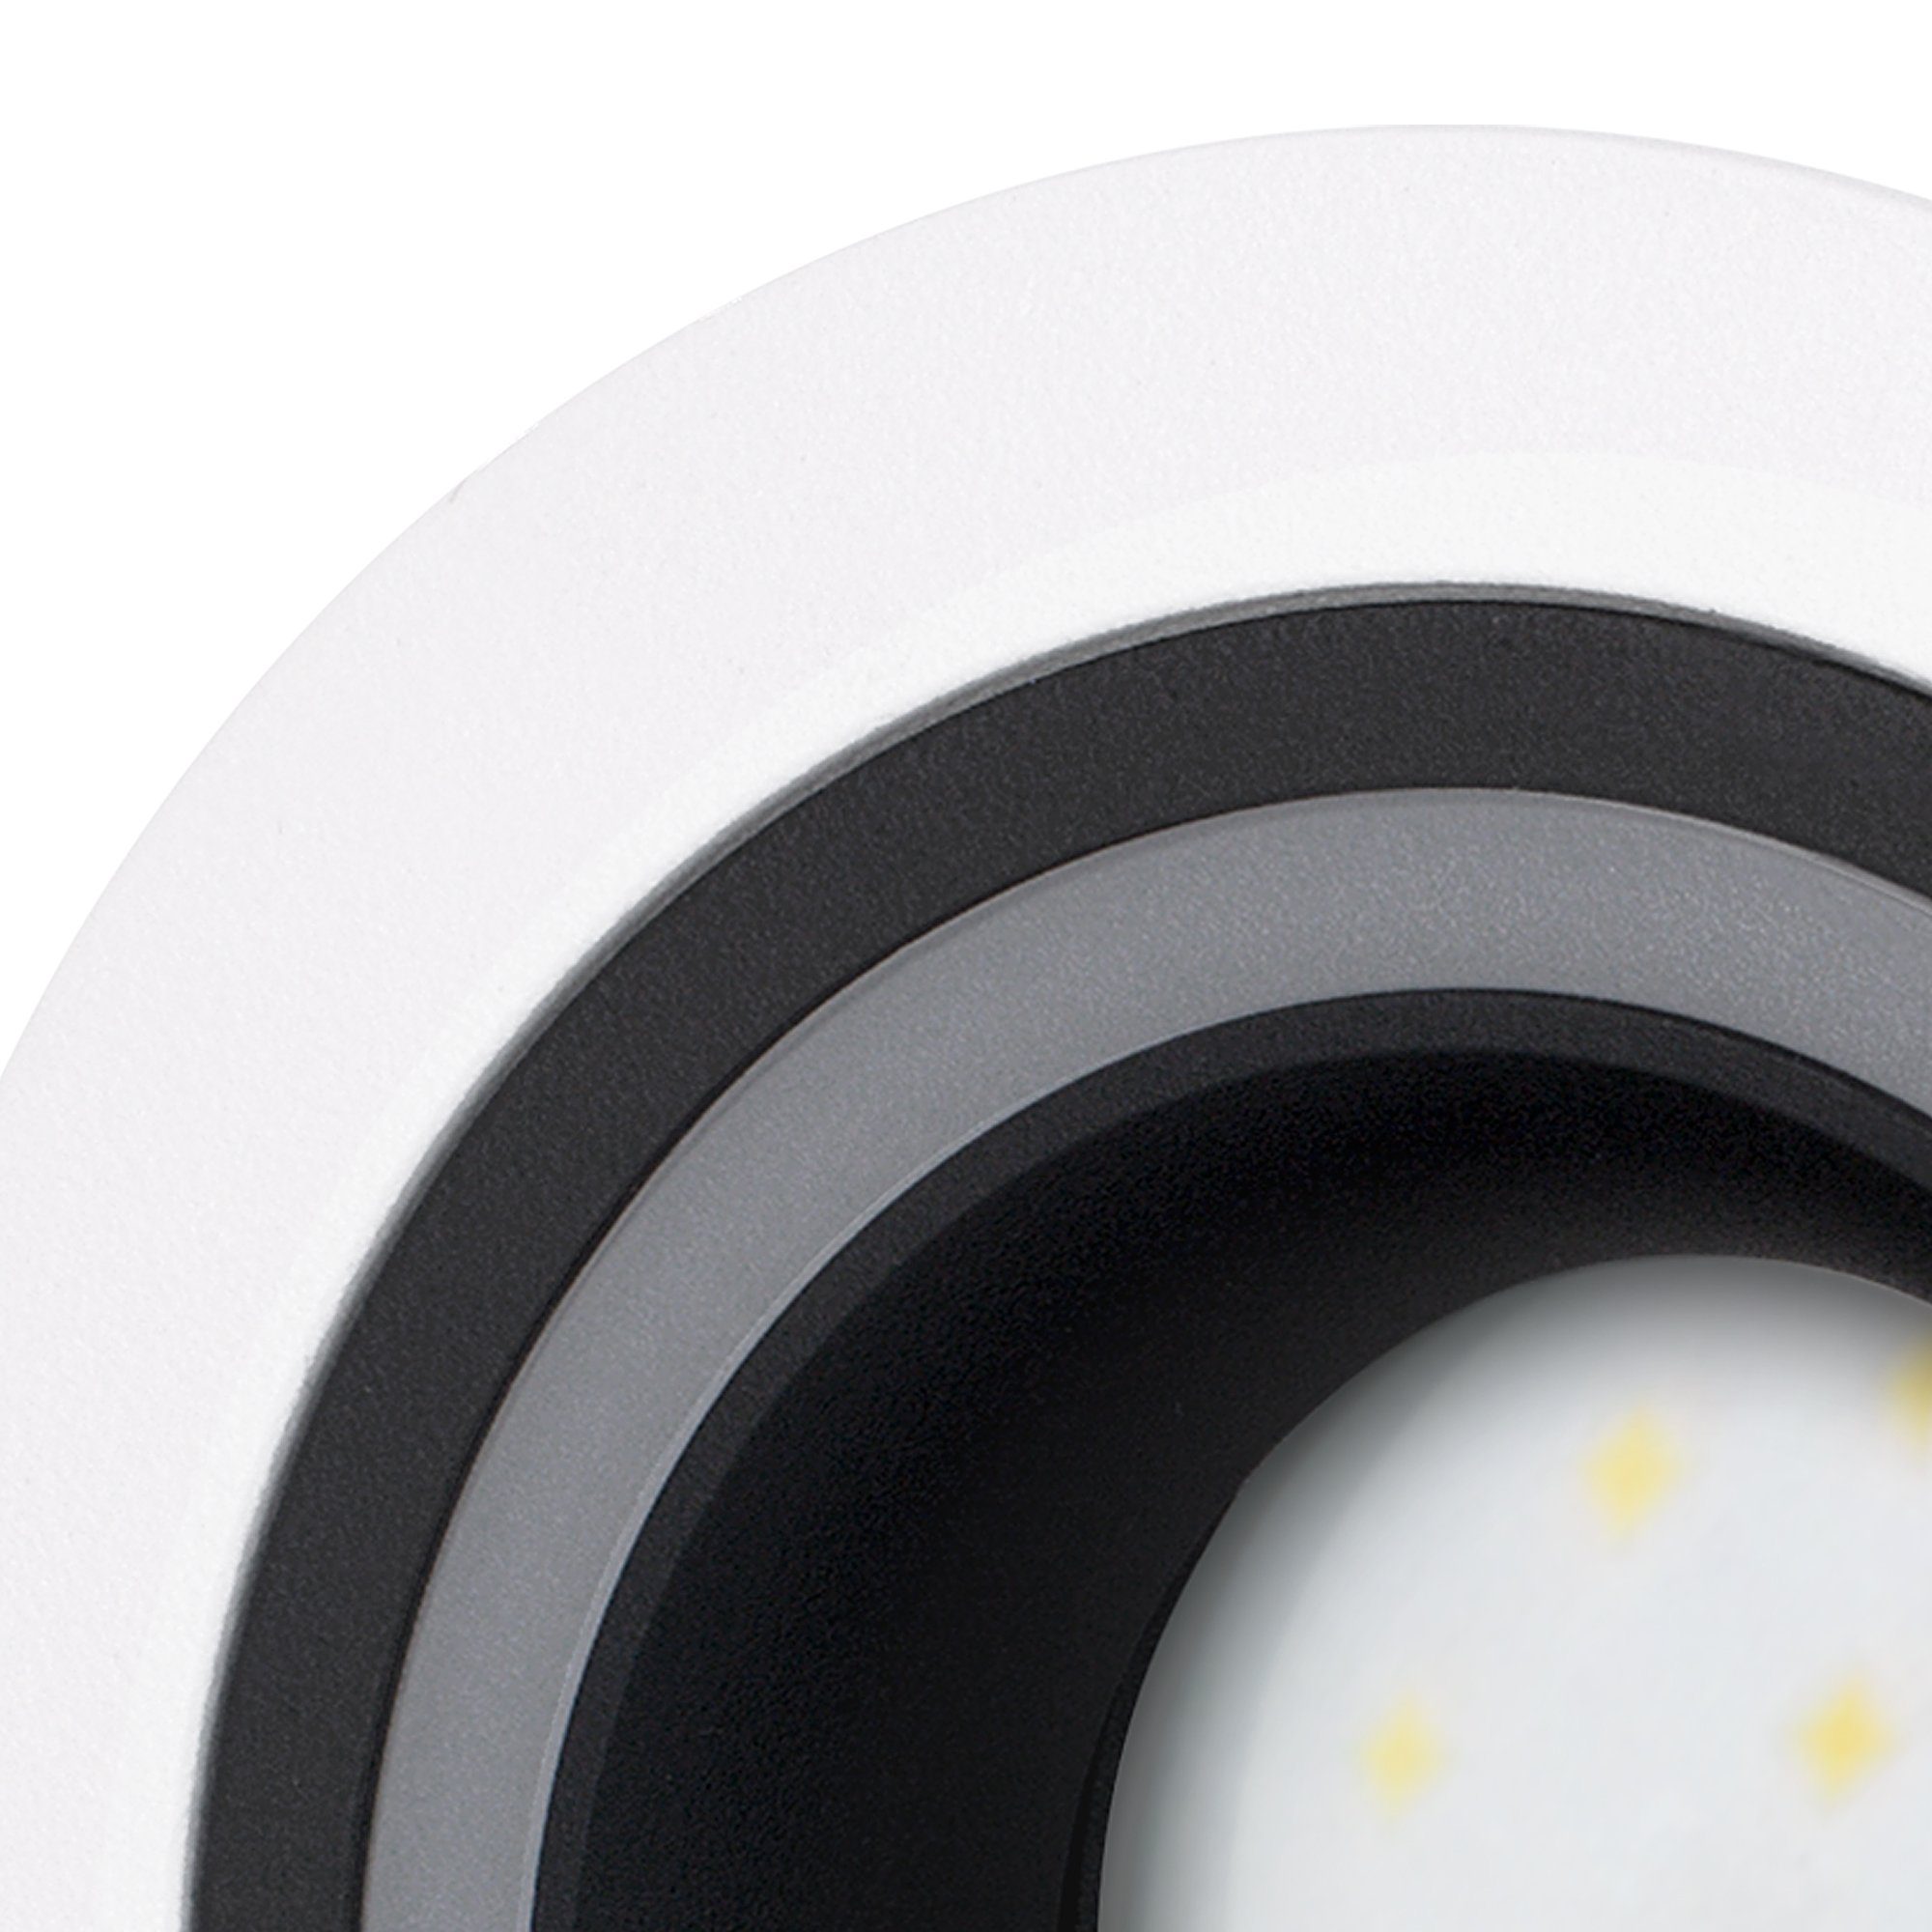 SSC-LUXon Einbaustrahler Warmweiß mit Einbaustrahler schwarz weiss Design LED LED dimmbar, Matapo GU10